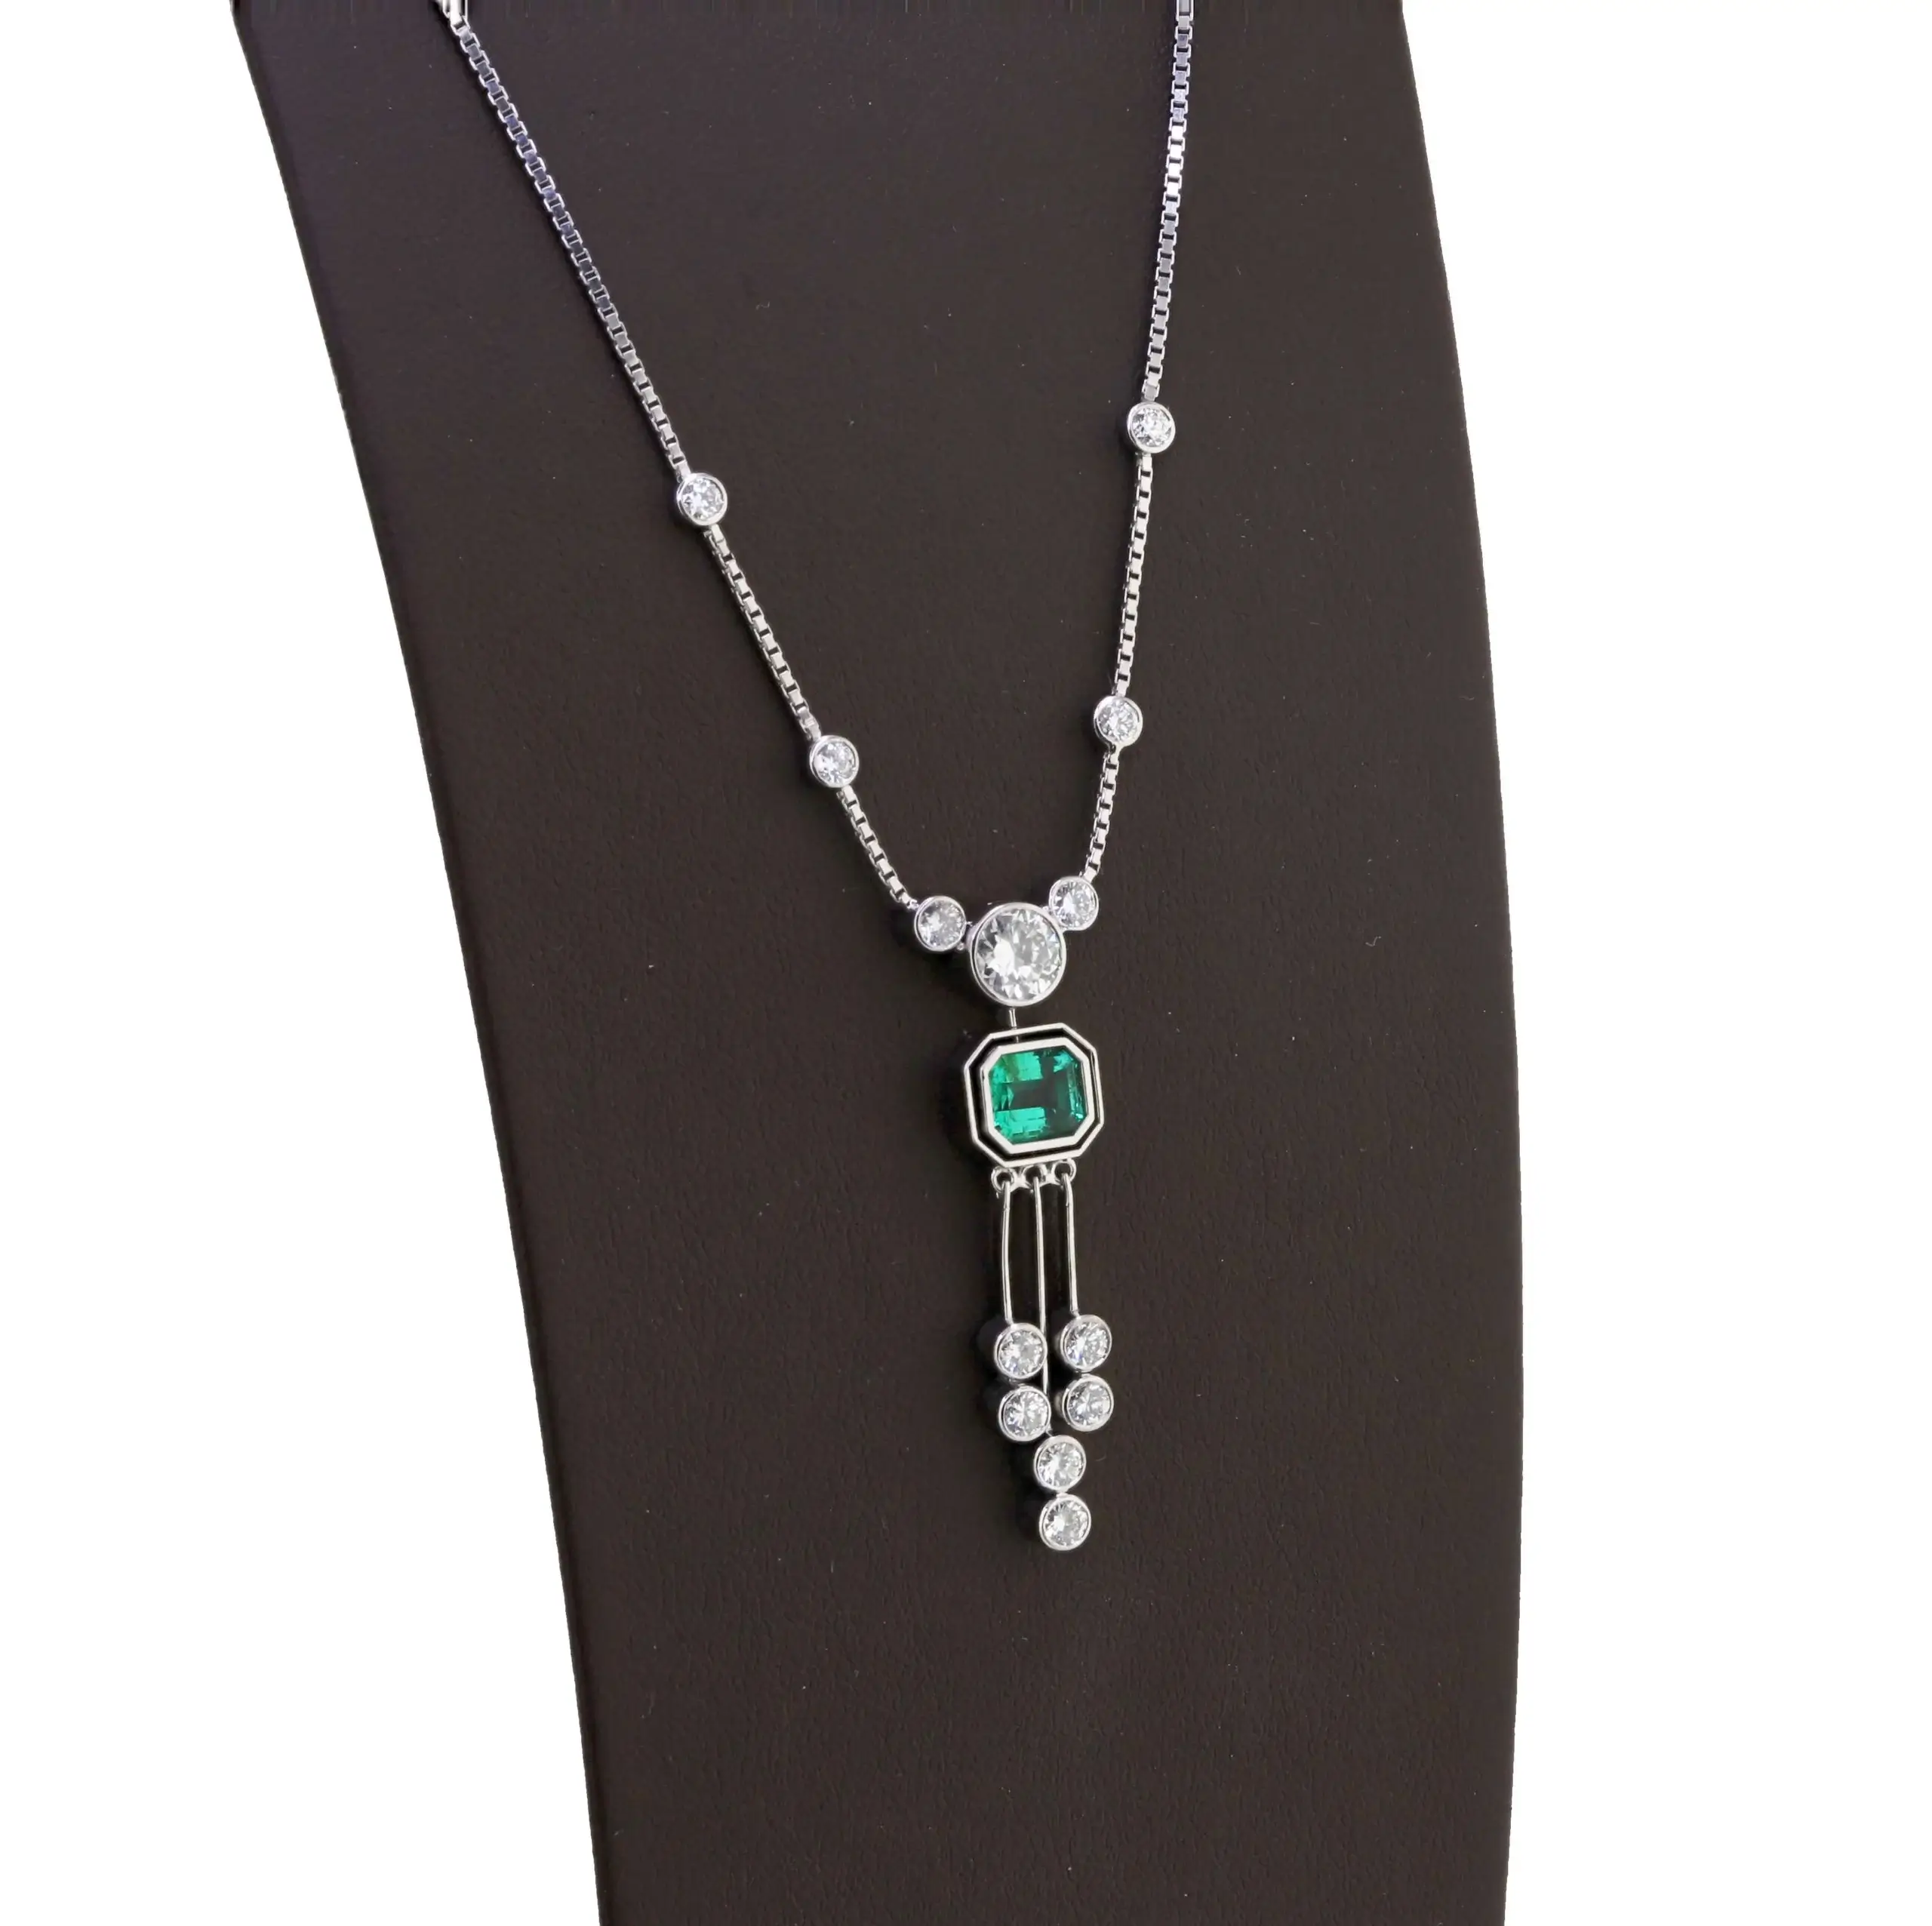 Emerald Diamond Necklace, signed by Bernhard Ilg, Zurich